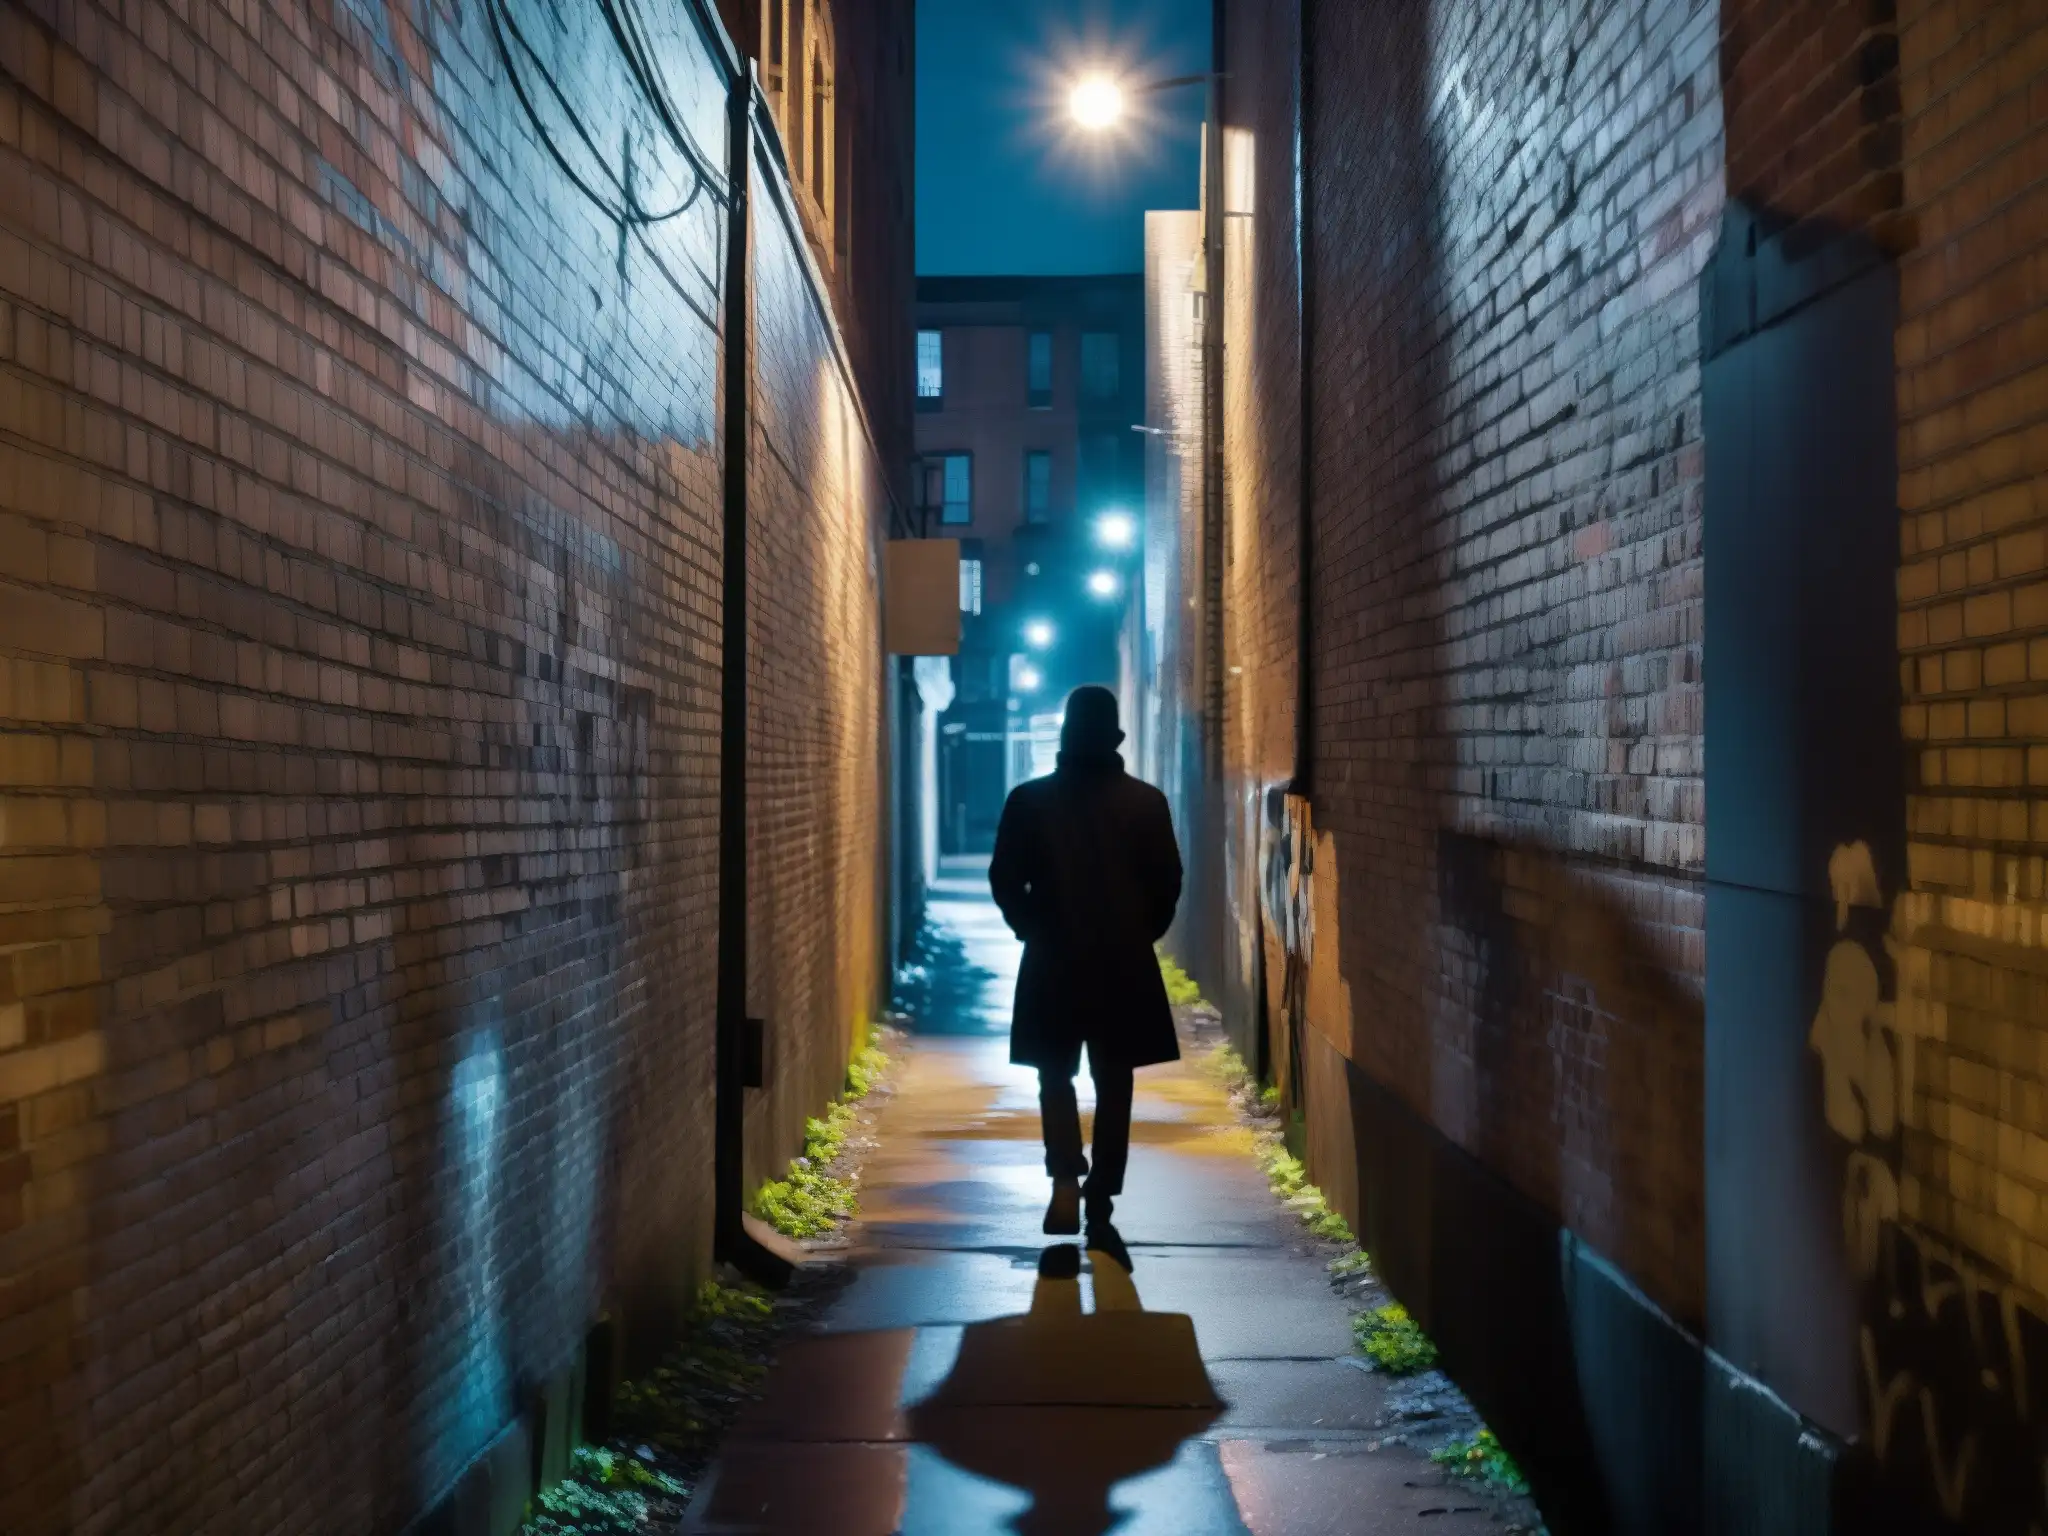 Alleyway urbano en penumbra con luces de calle titilantes y muros de ladrillo graffiteados, evocando misterio y suspense, figura en la sombra